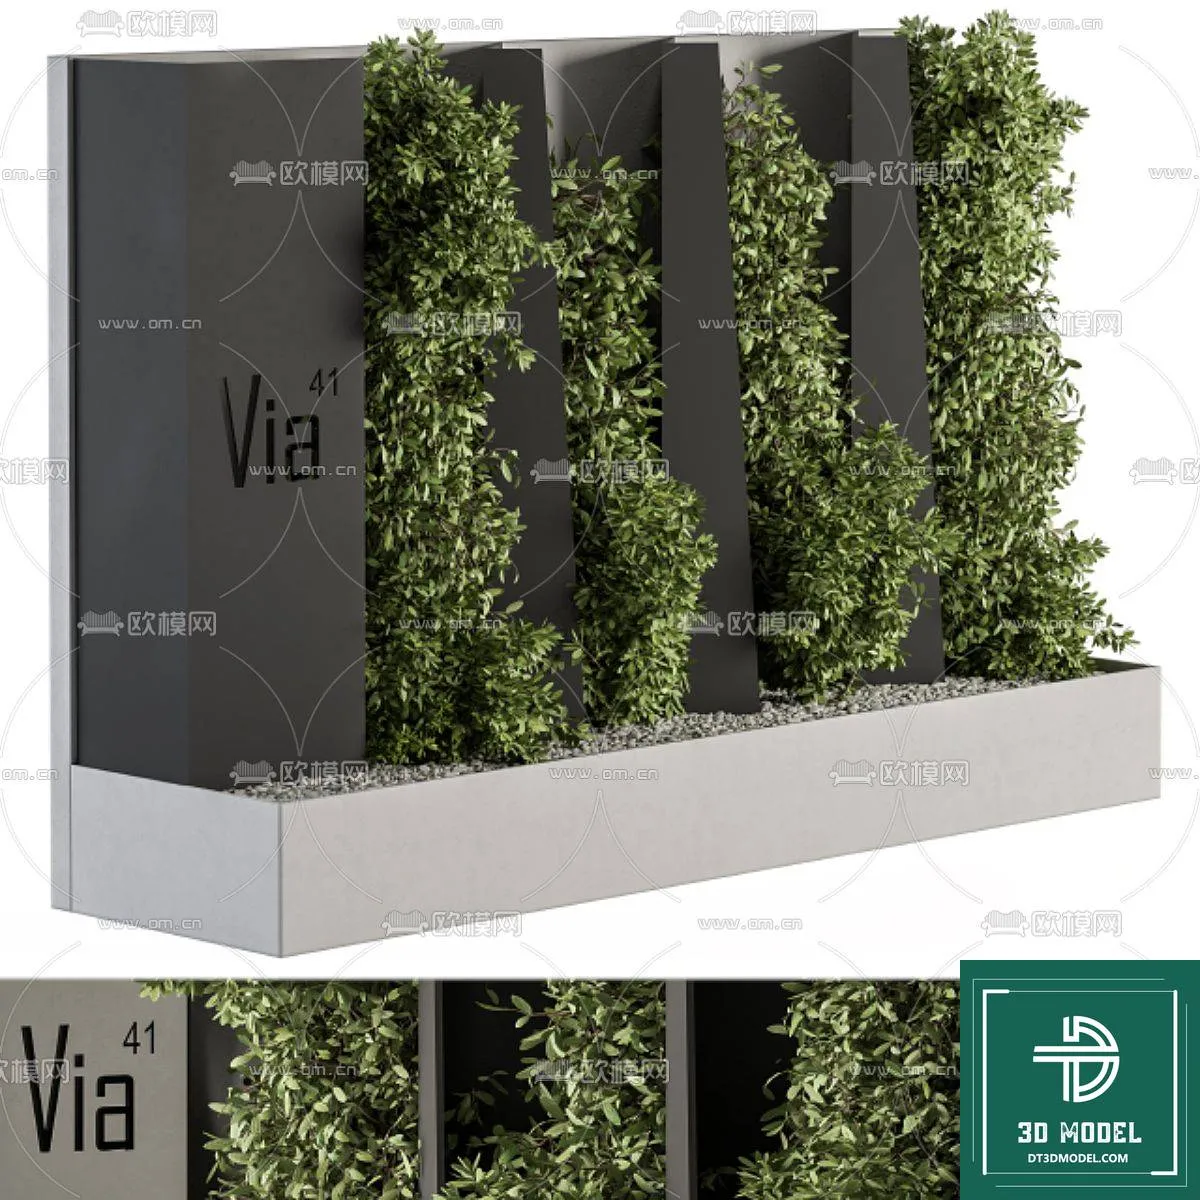 VERTICAL GARDEN – FITOWALL PLANT 3D MODEL – 002